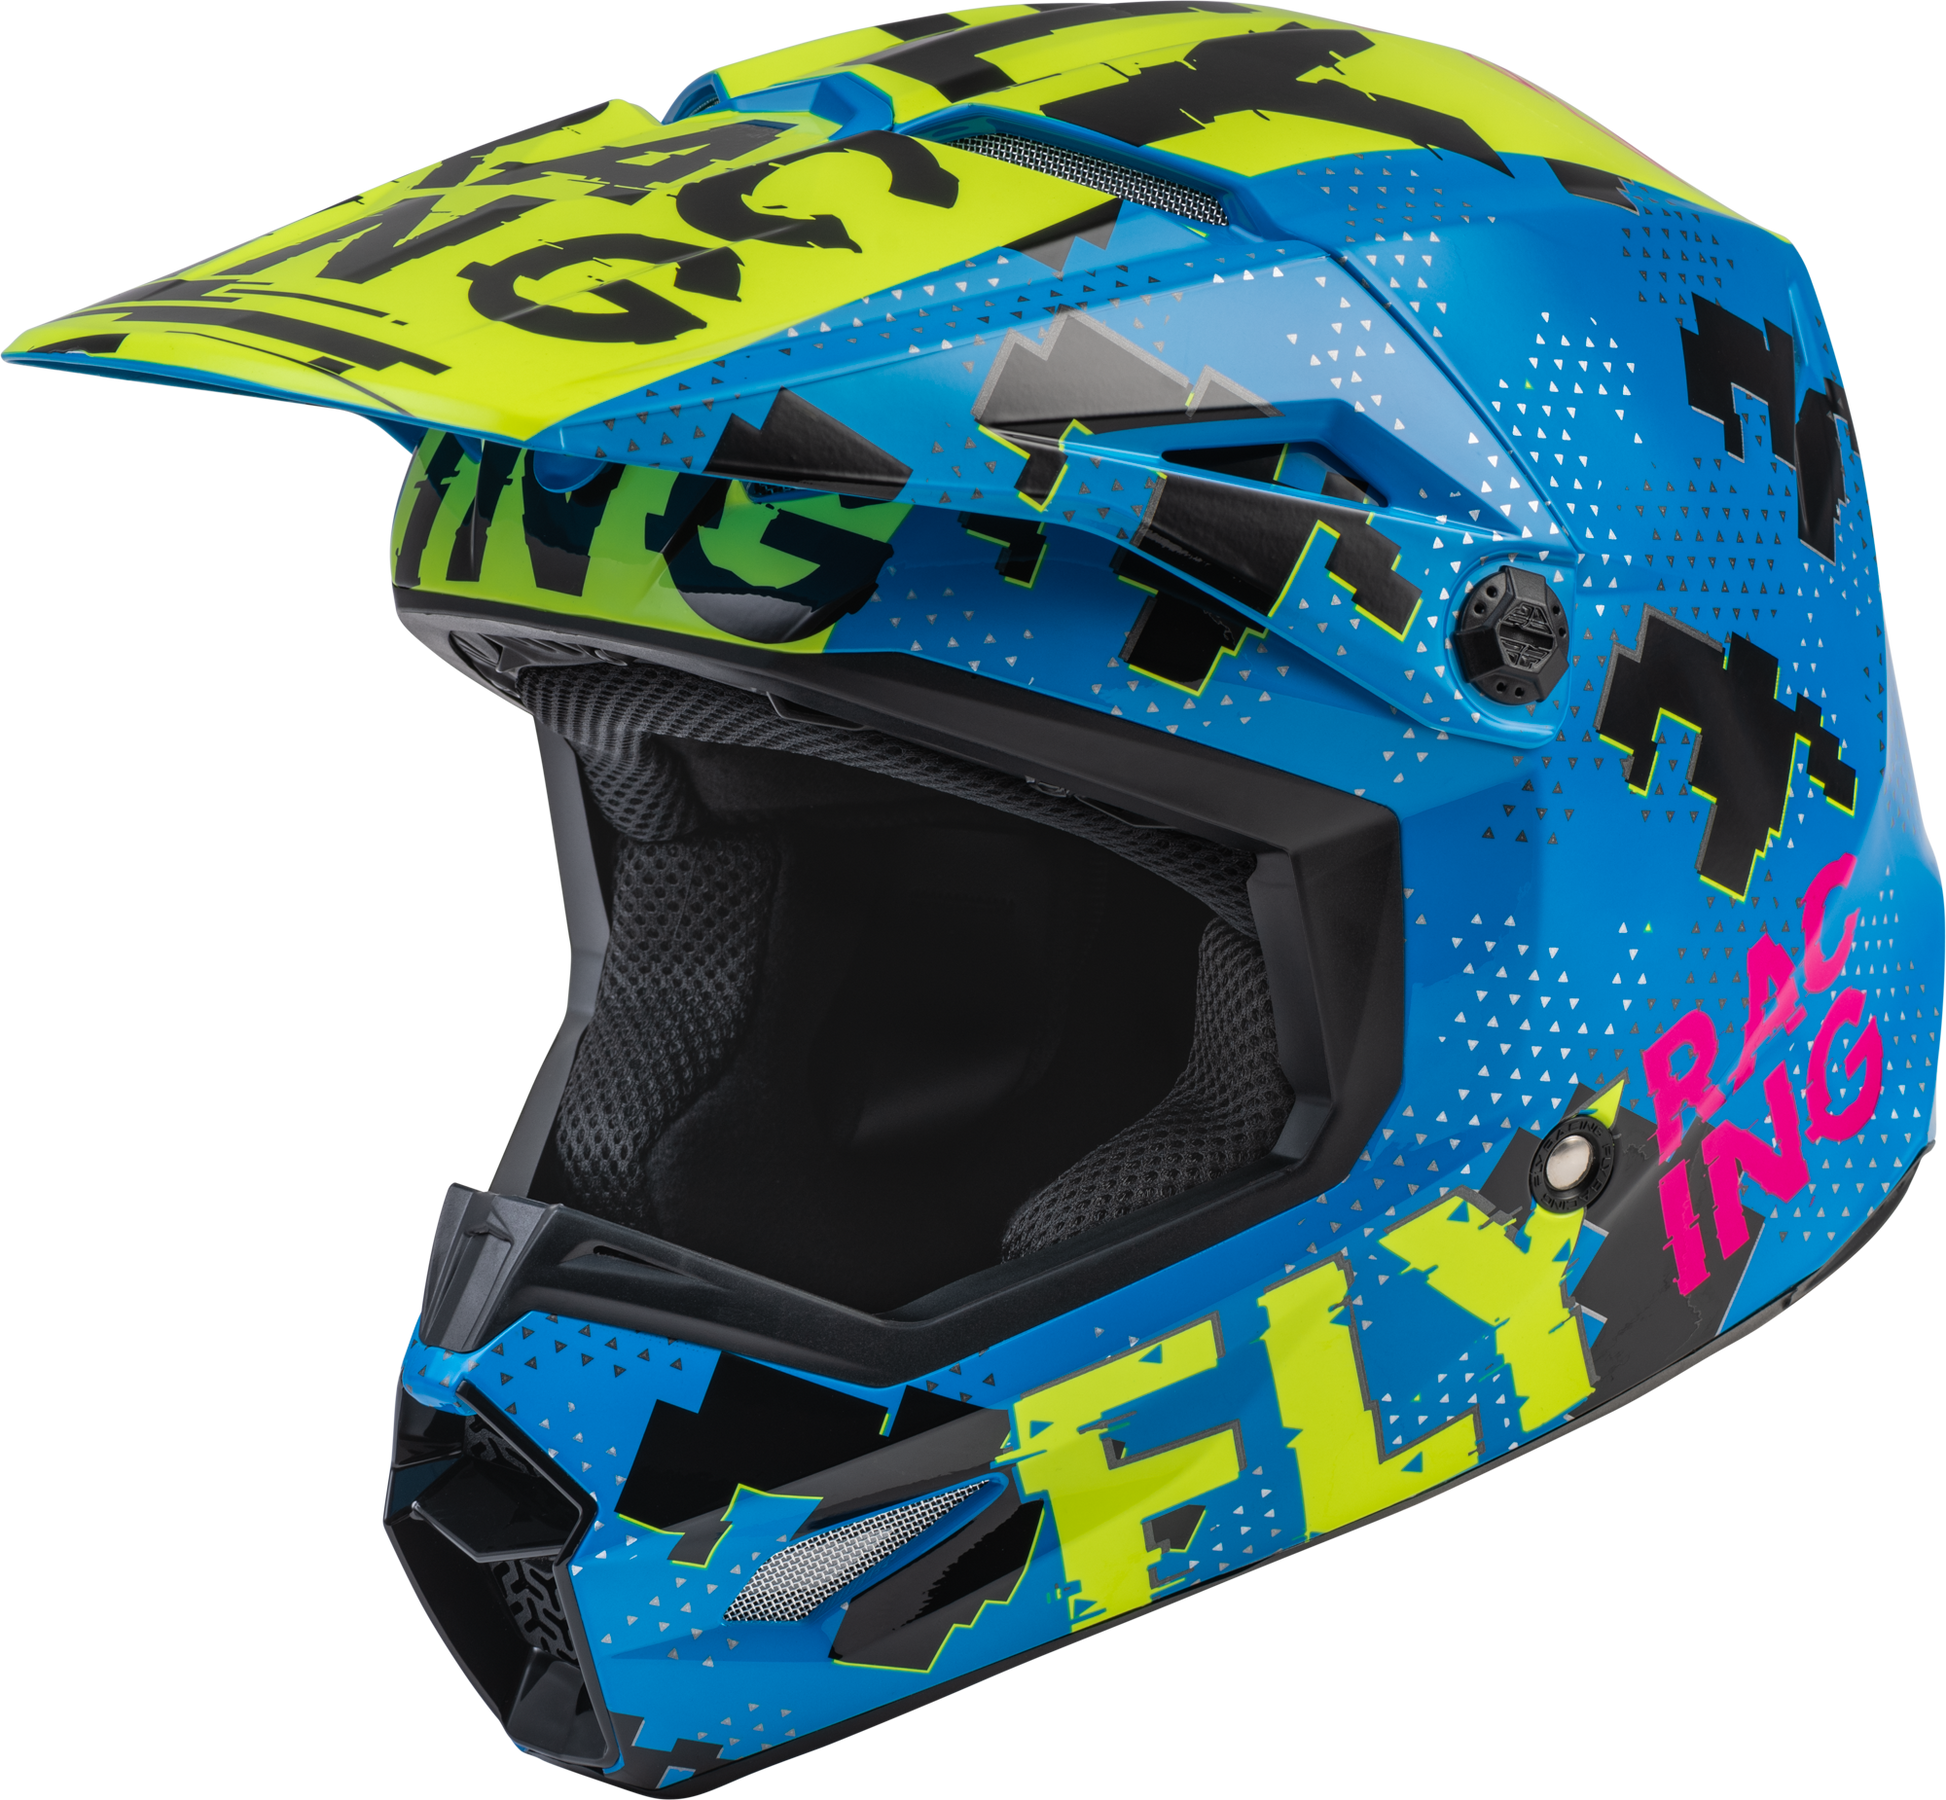 Fly Racing 73-3492 Youth Kinetic Scan Helmet Blue/Hi-Vis/Pink